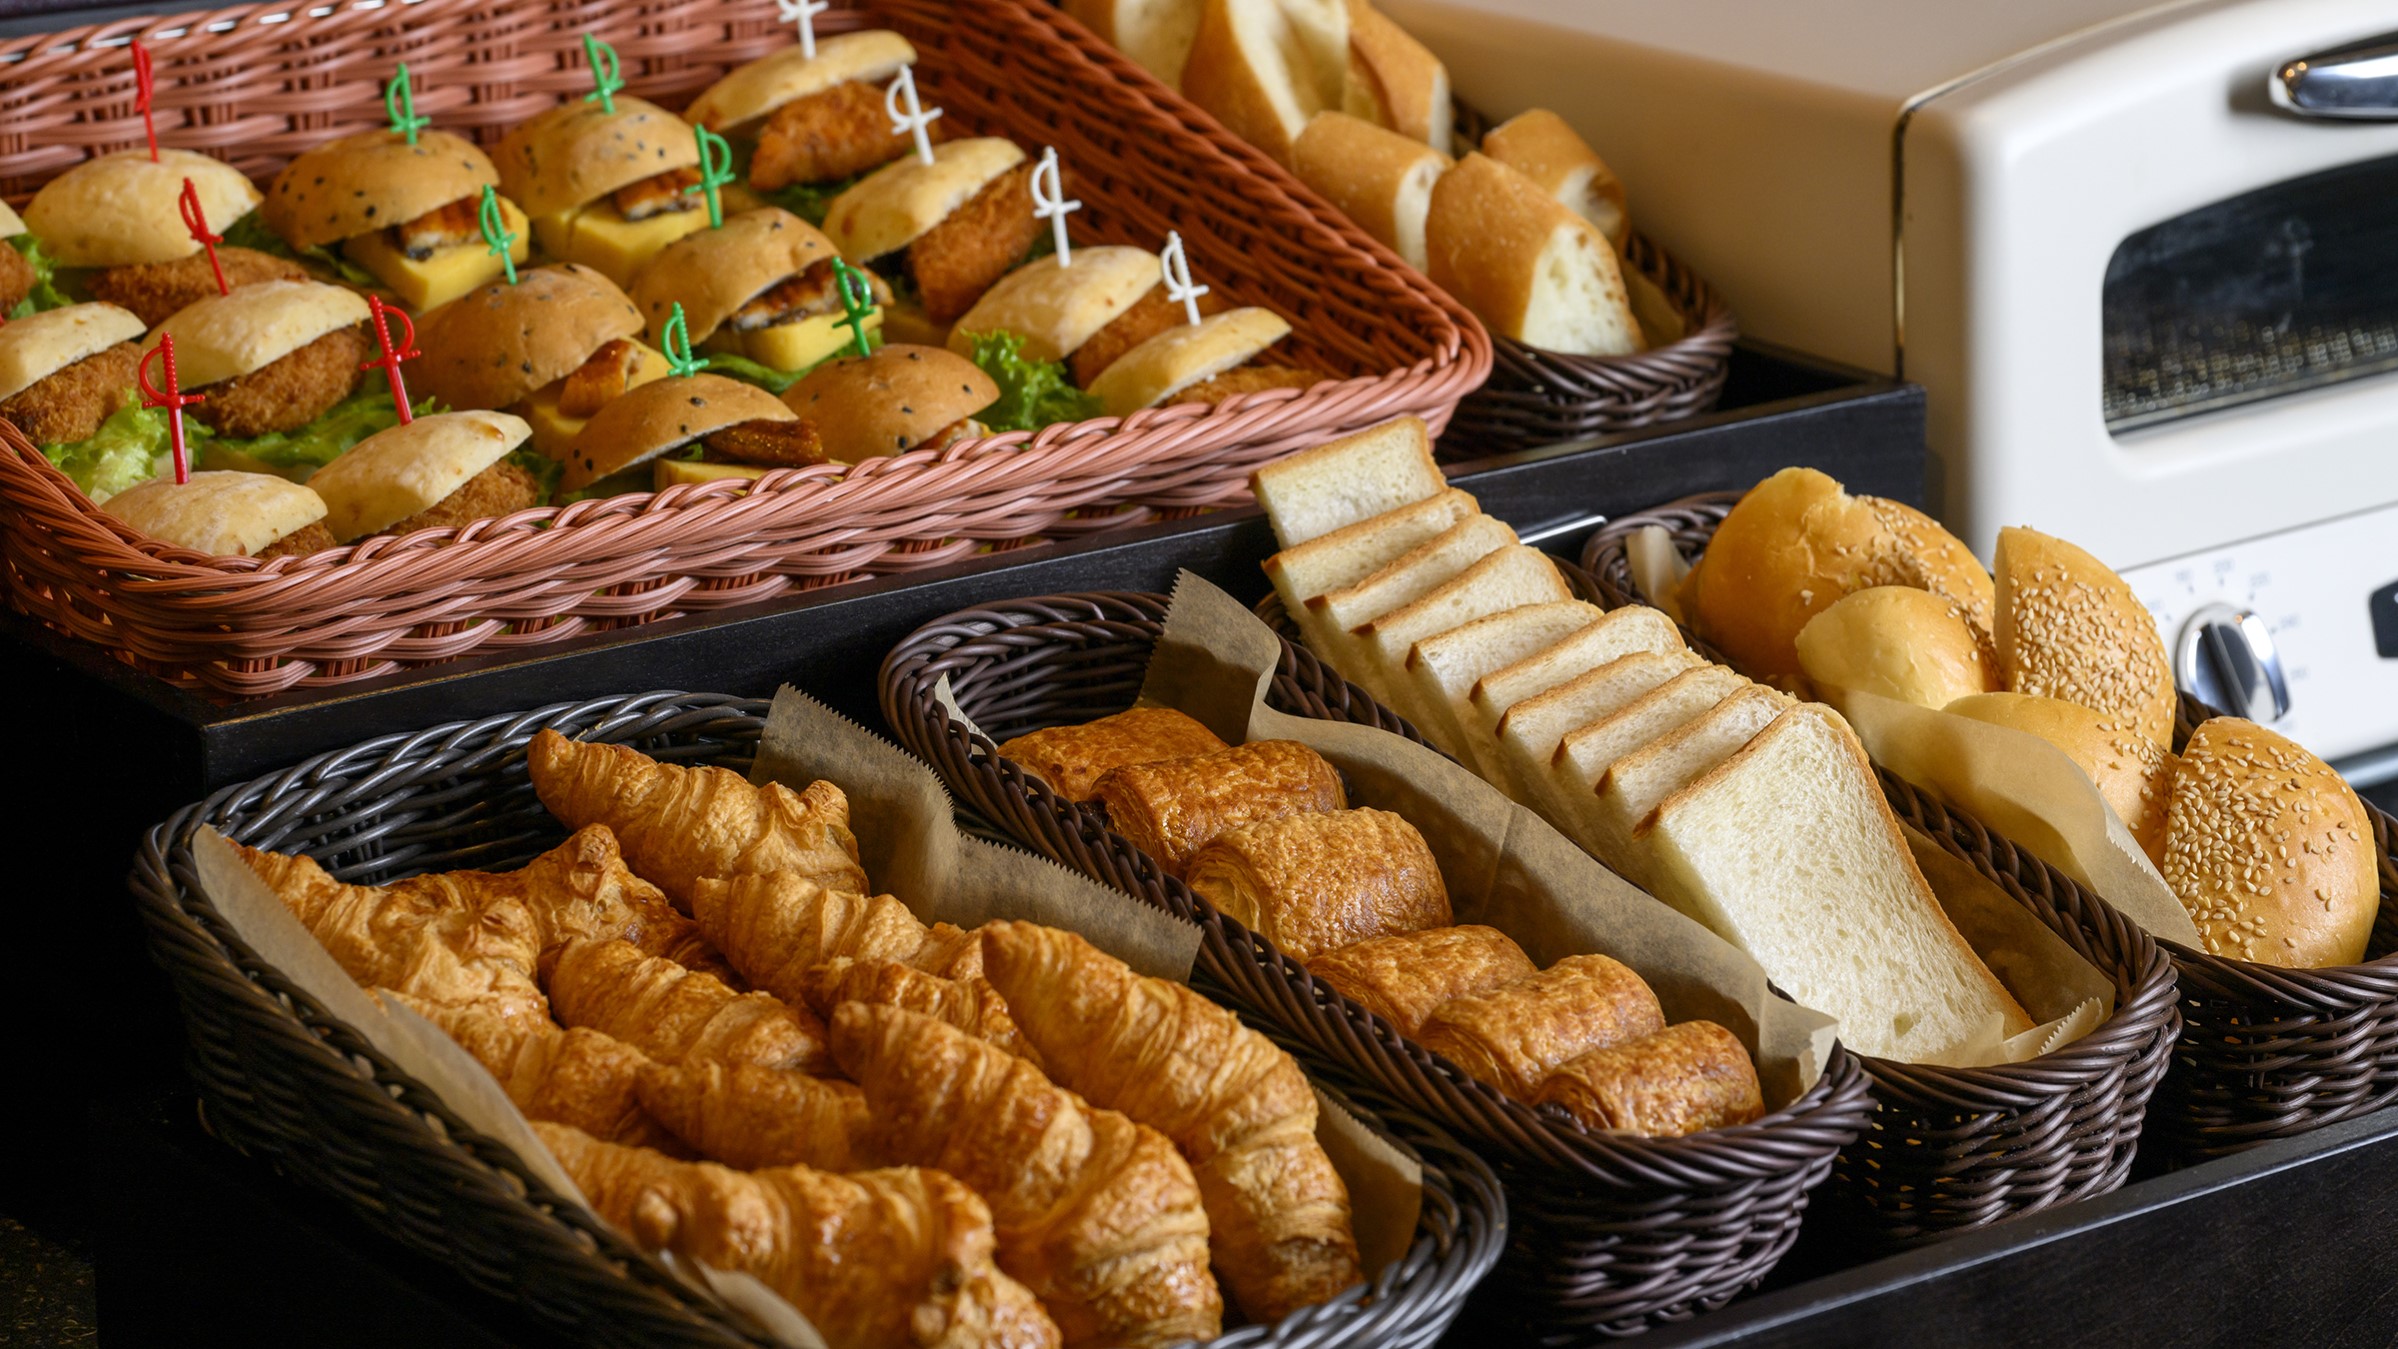 フランス直輸入のパンを複数種類ご用意しております。